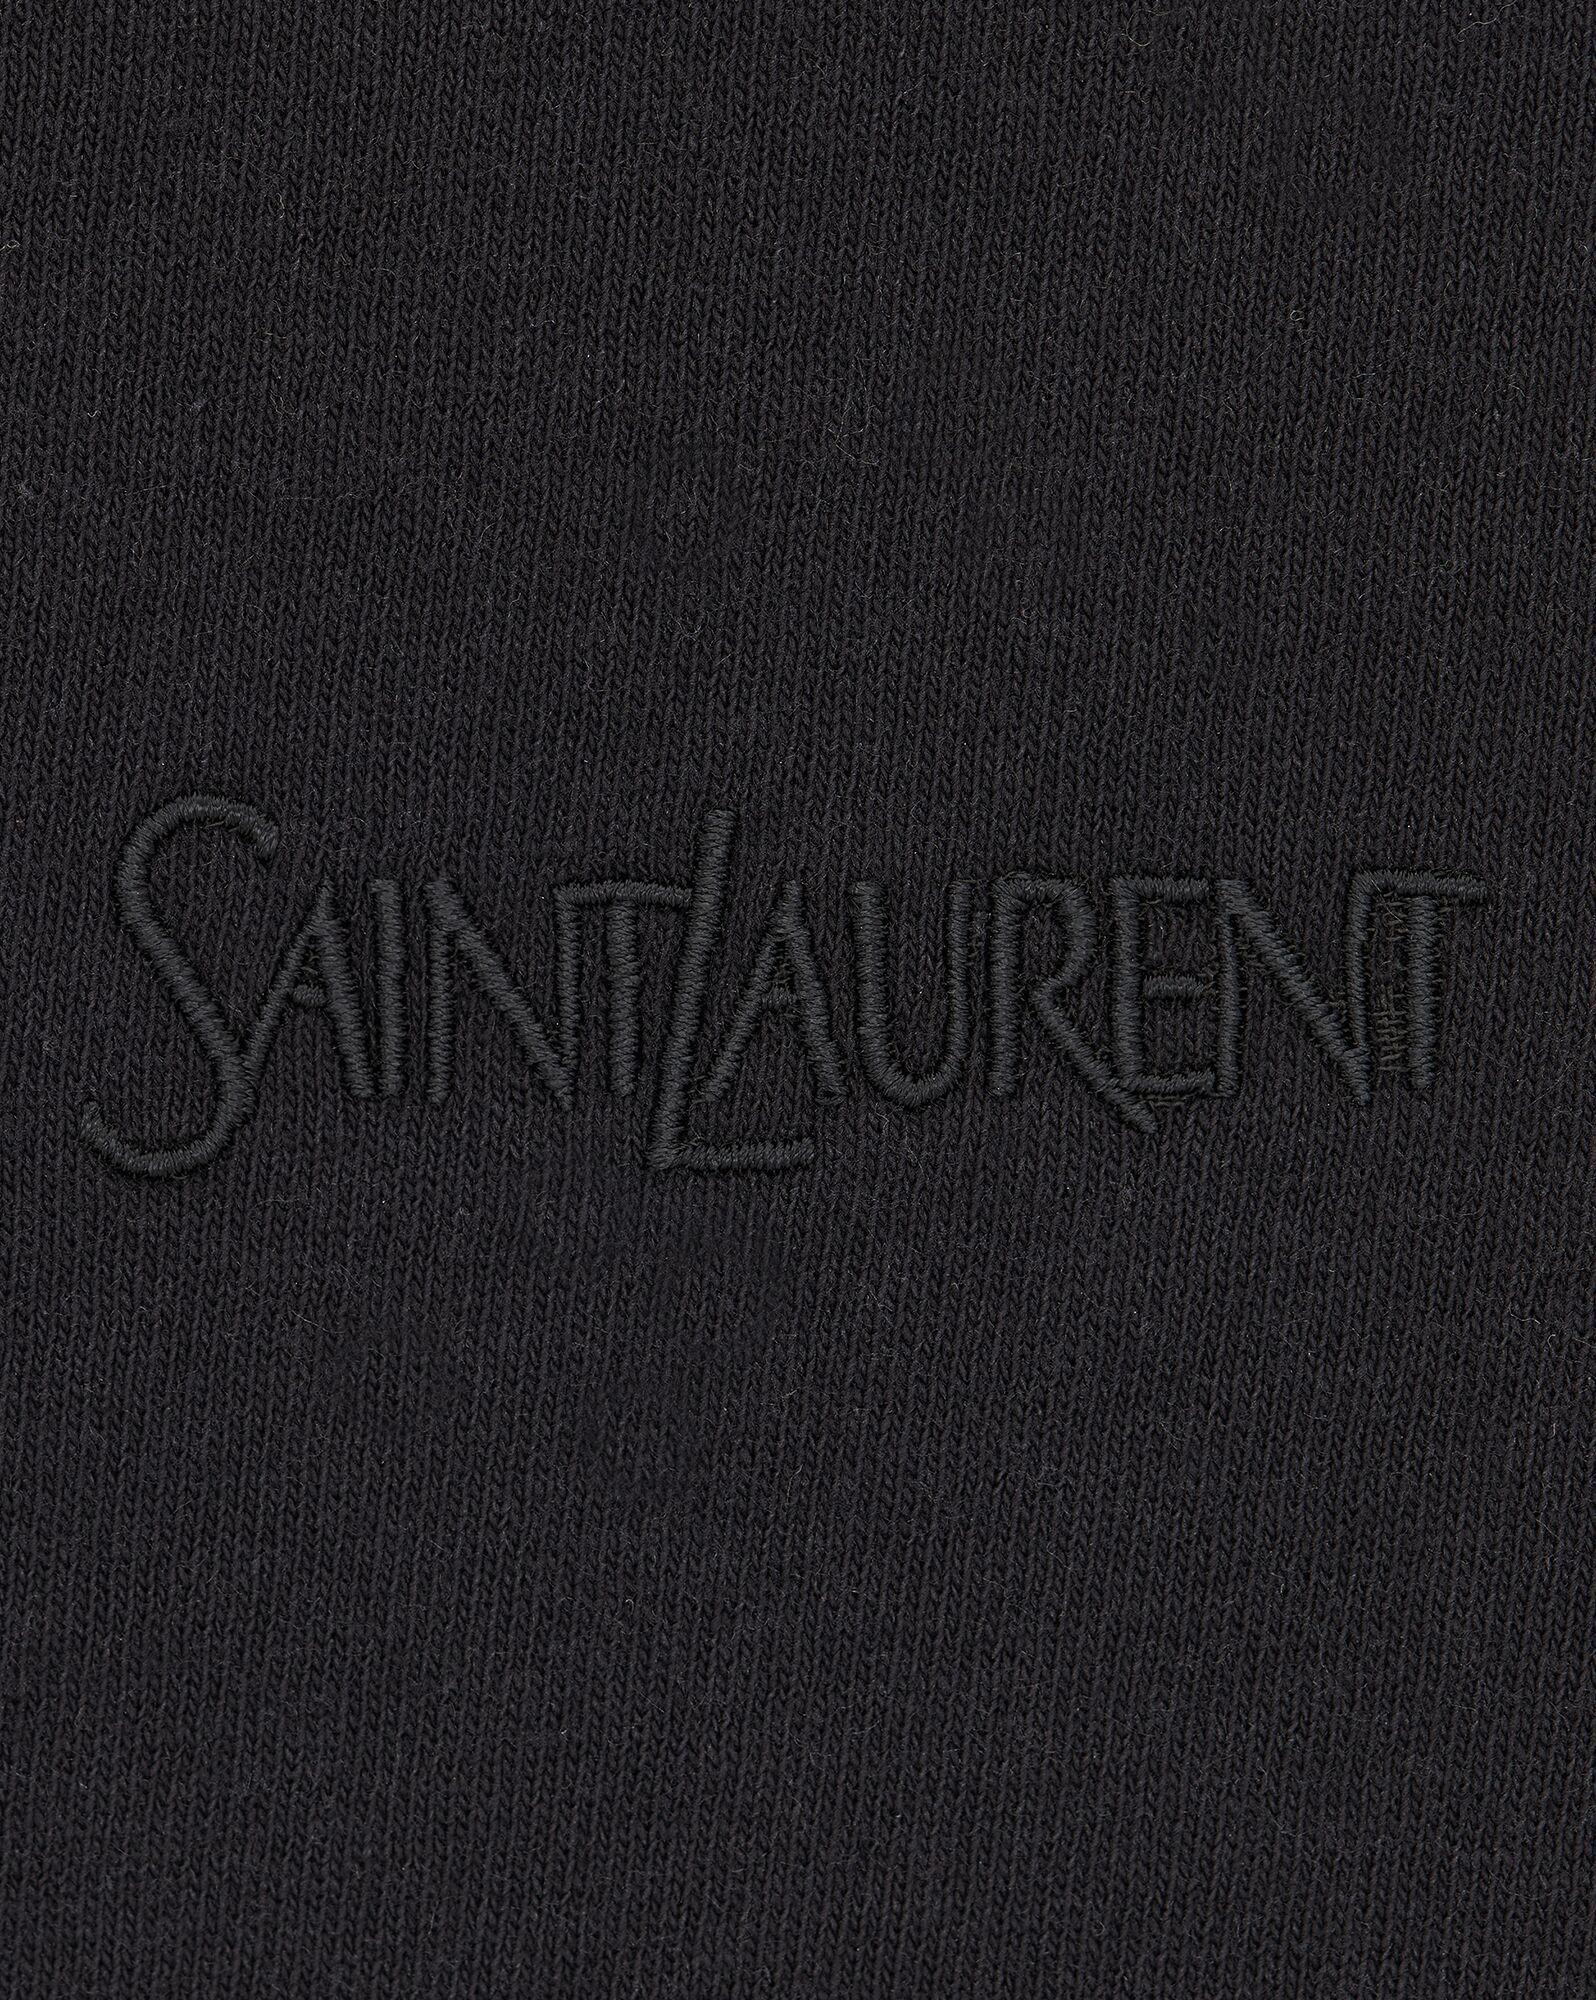 Saint Laurent T-shirt in Black | Lyst